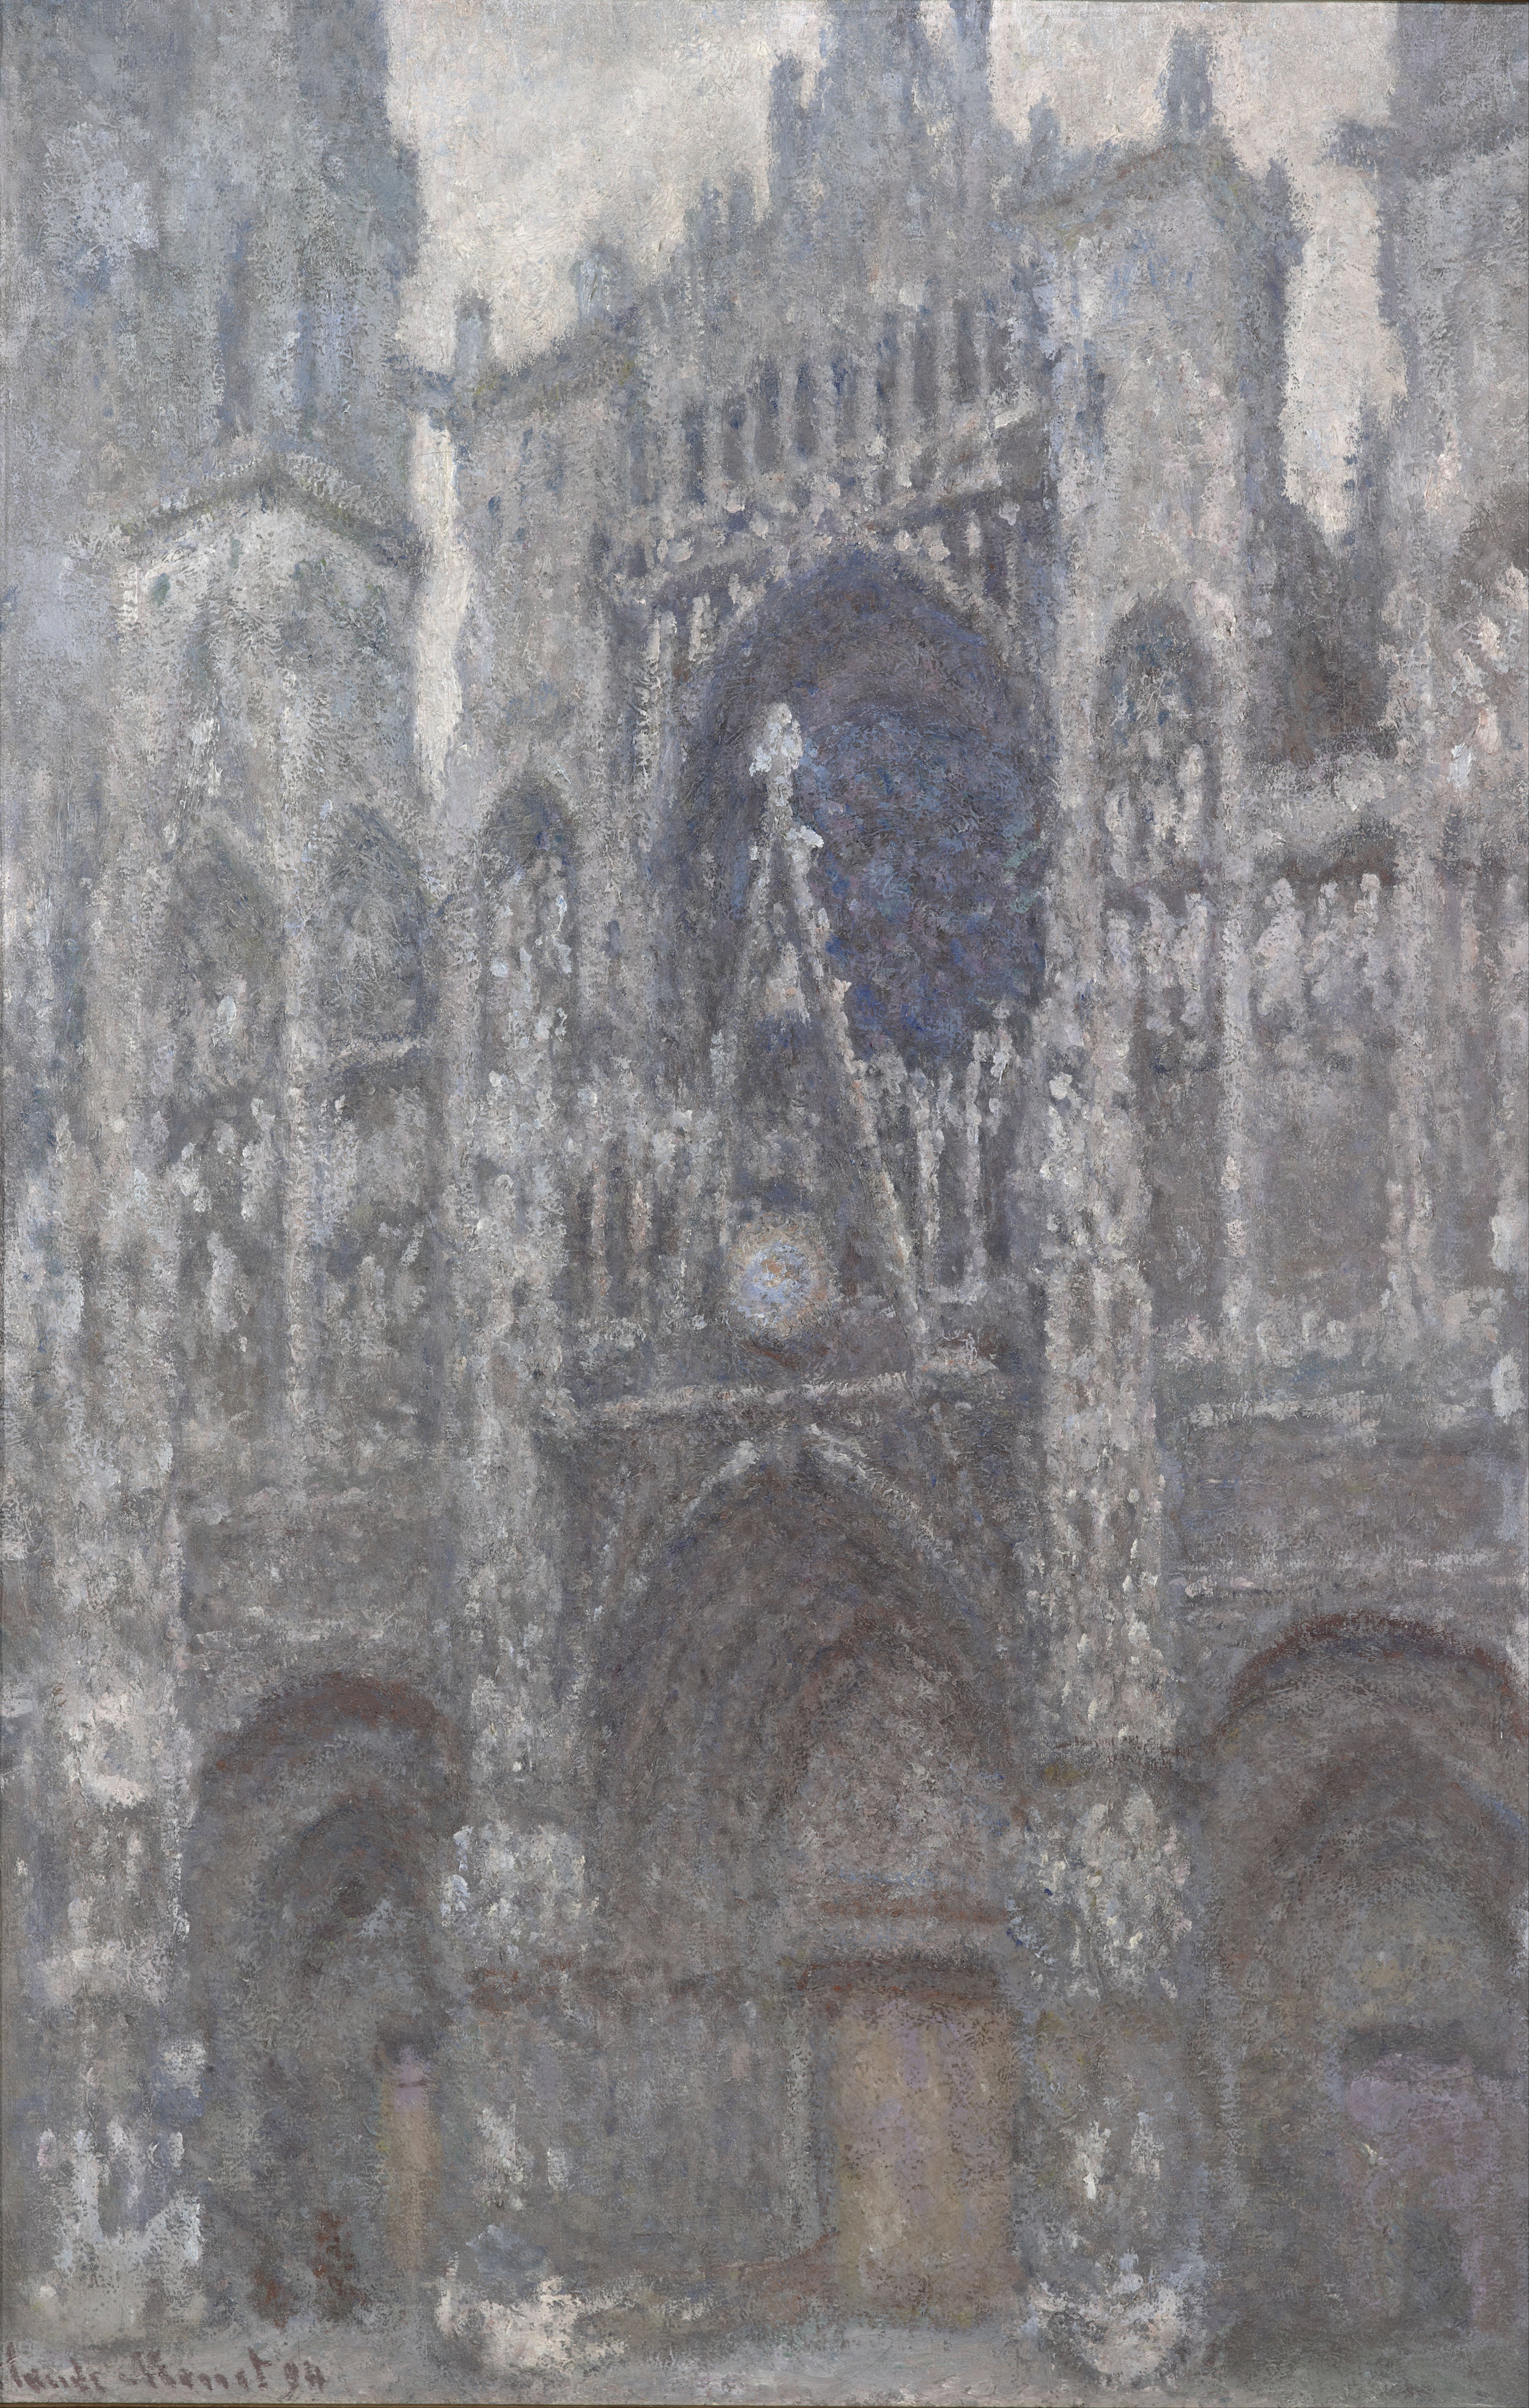 द कैथेड्रल इन रोएन. द पोर्टल, ग्रे वेदर by Claude Monet - 1892 - 65 x 100 cm 